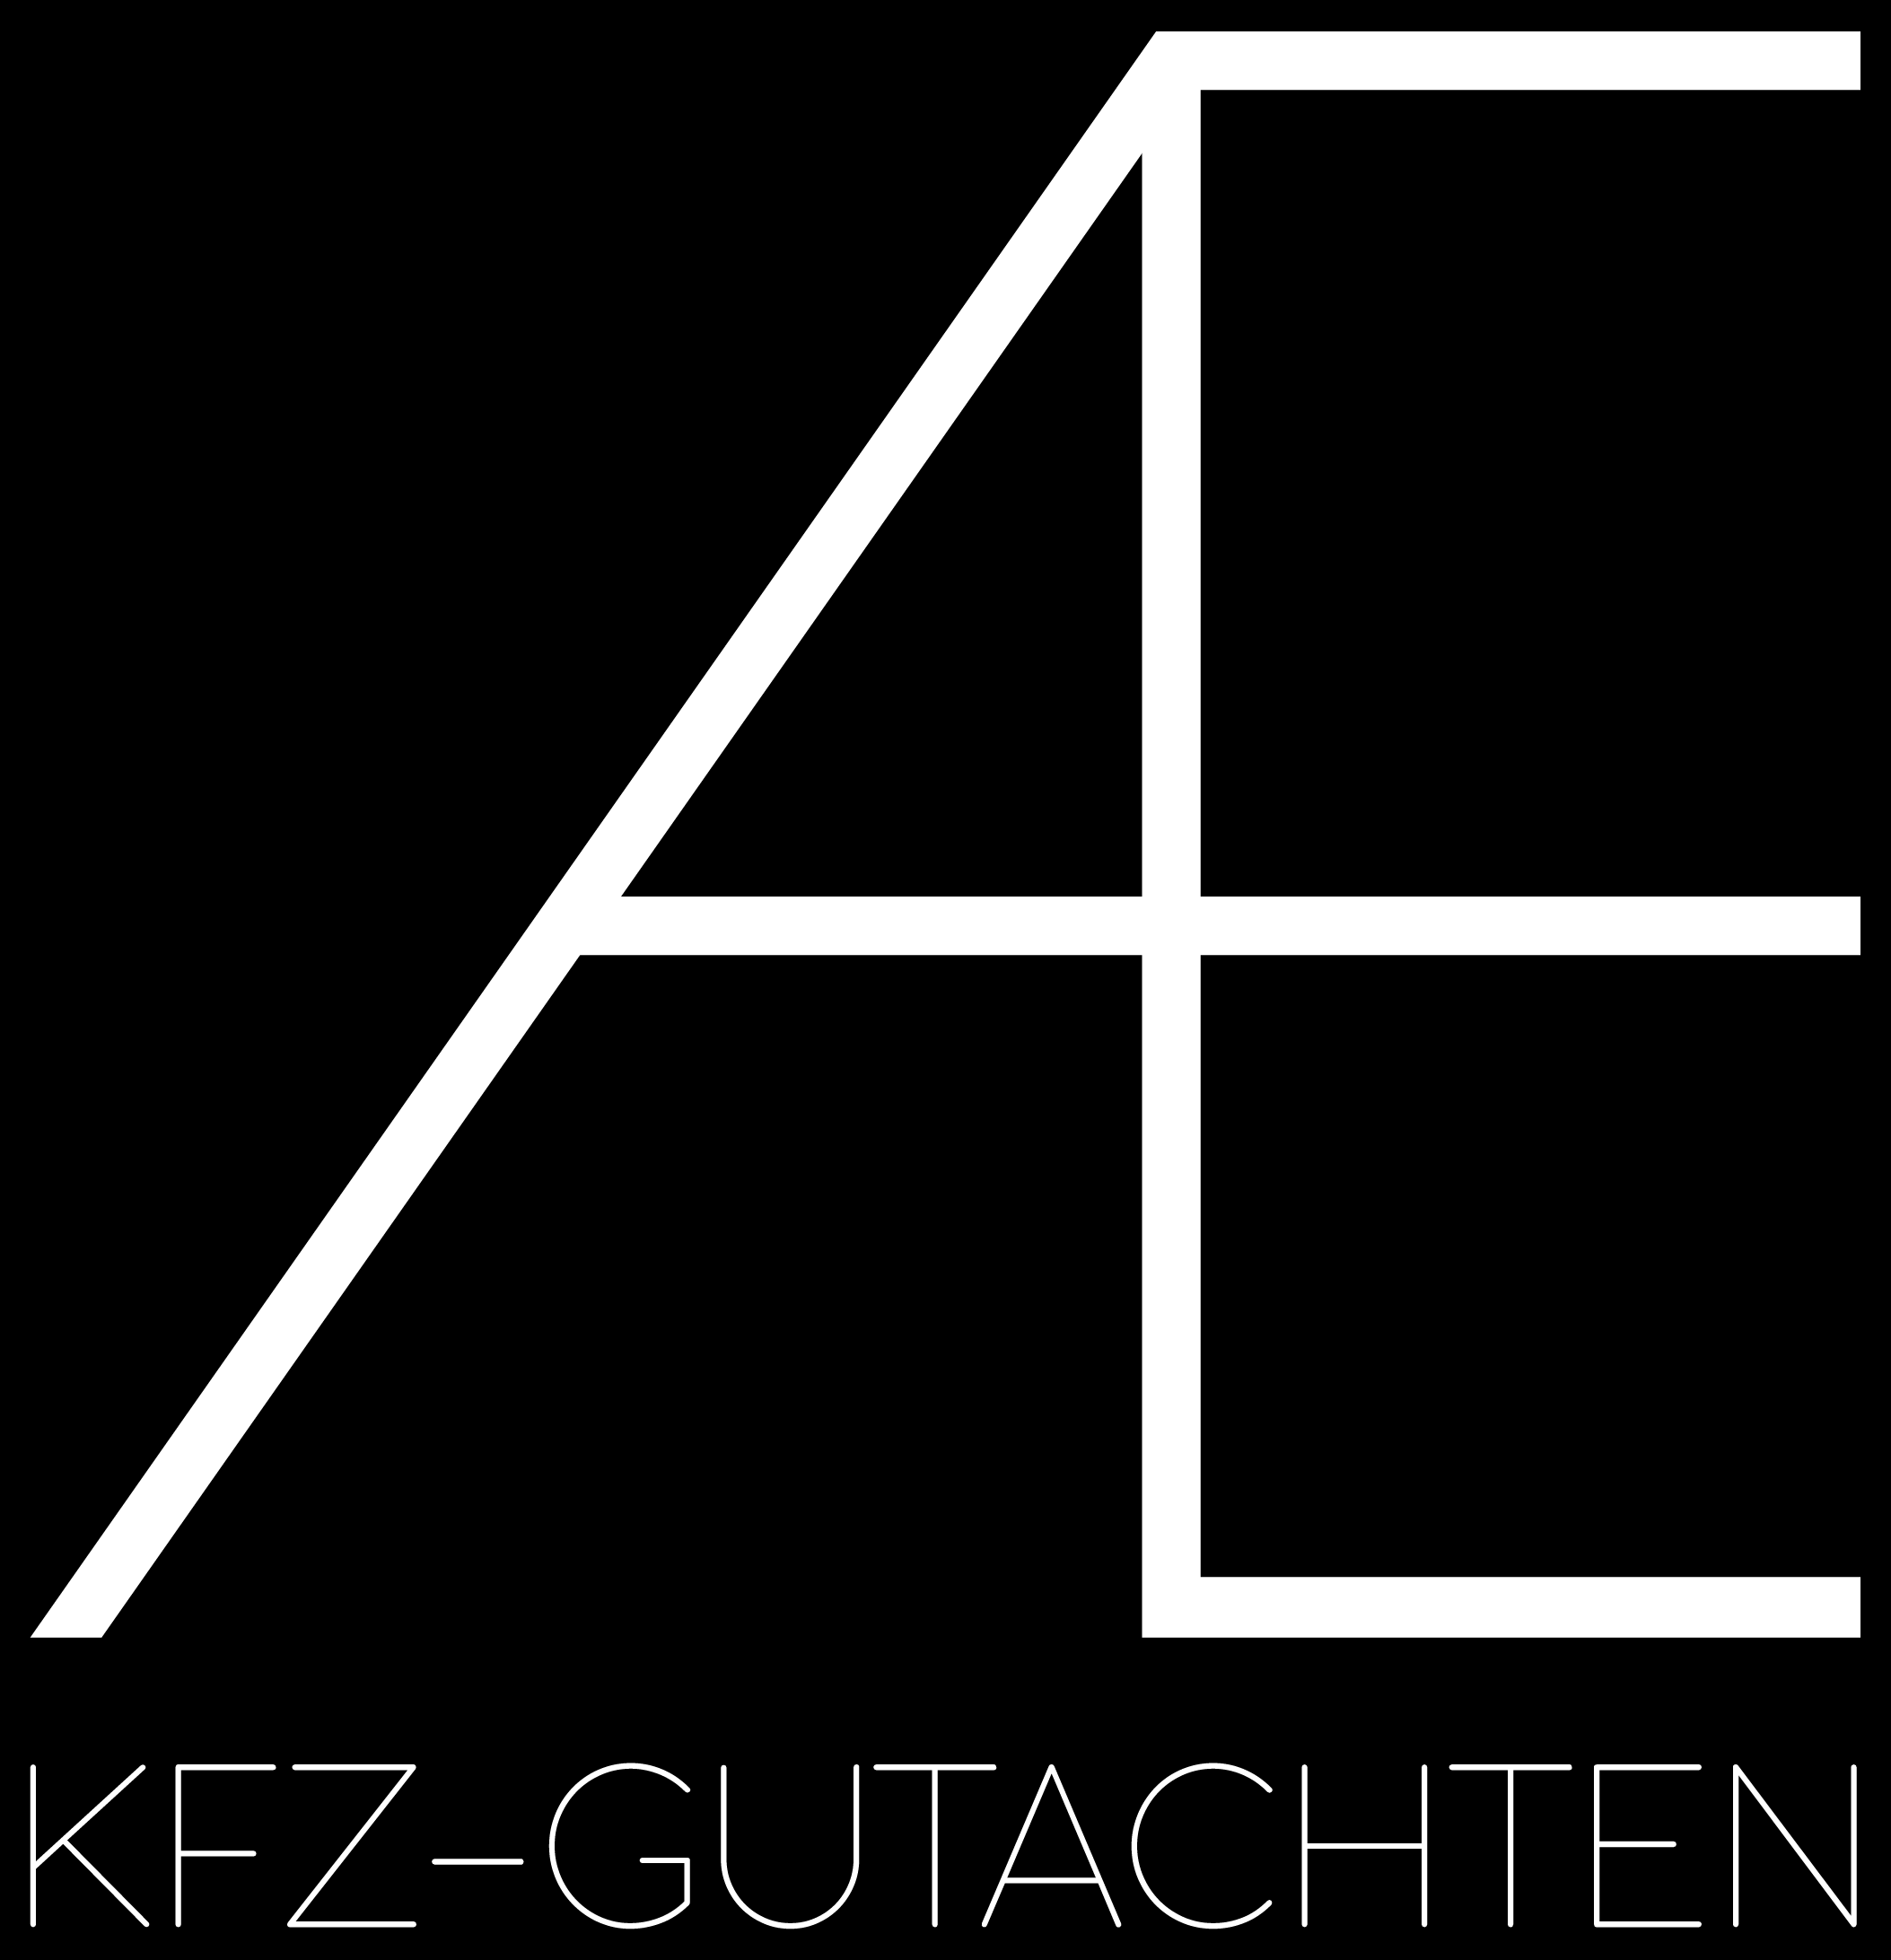 KFZ Gutachter in München - unabhängig, erfahren, präzise